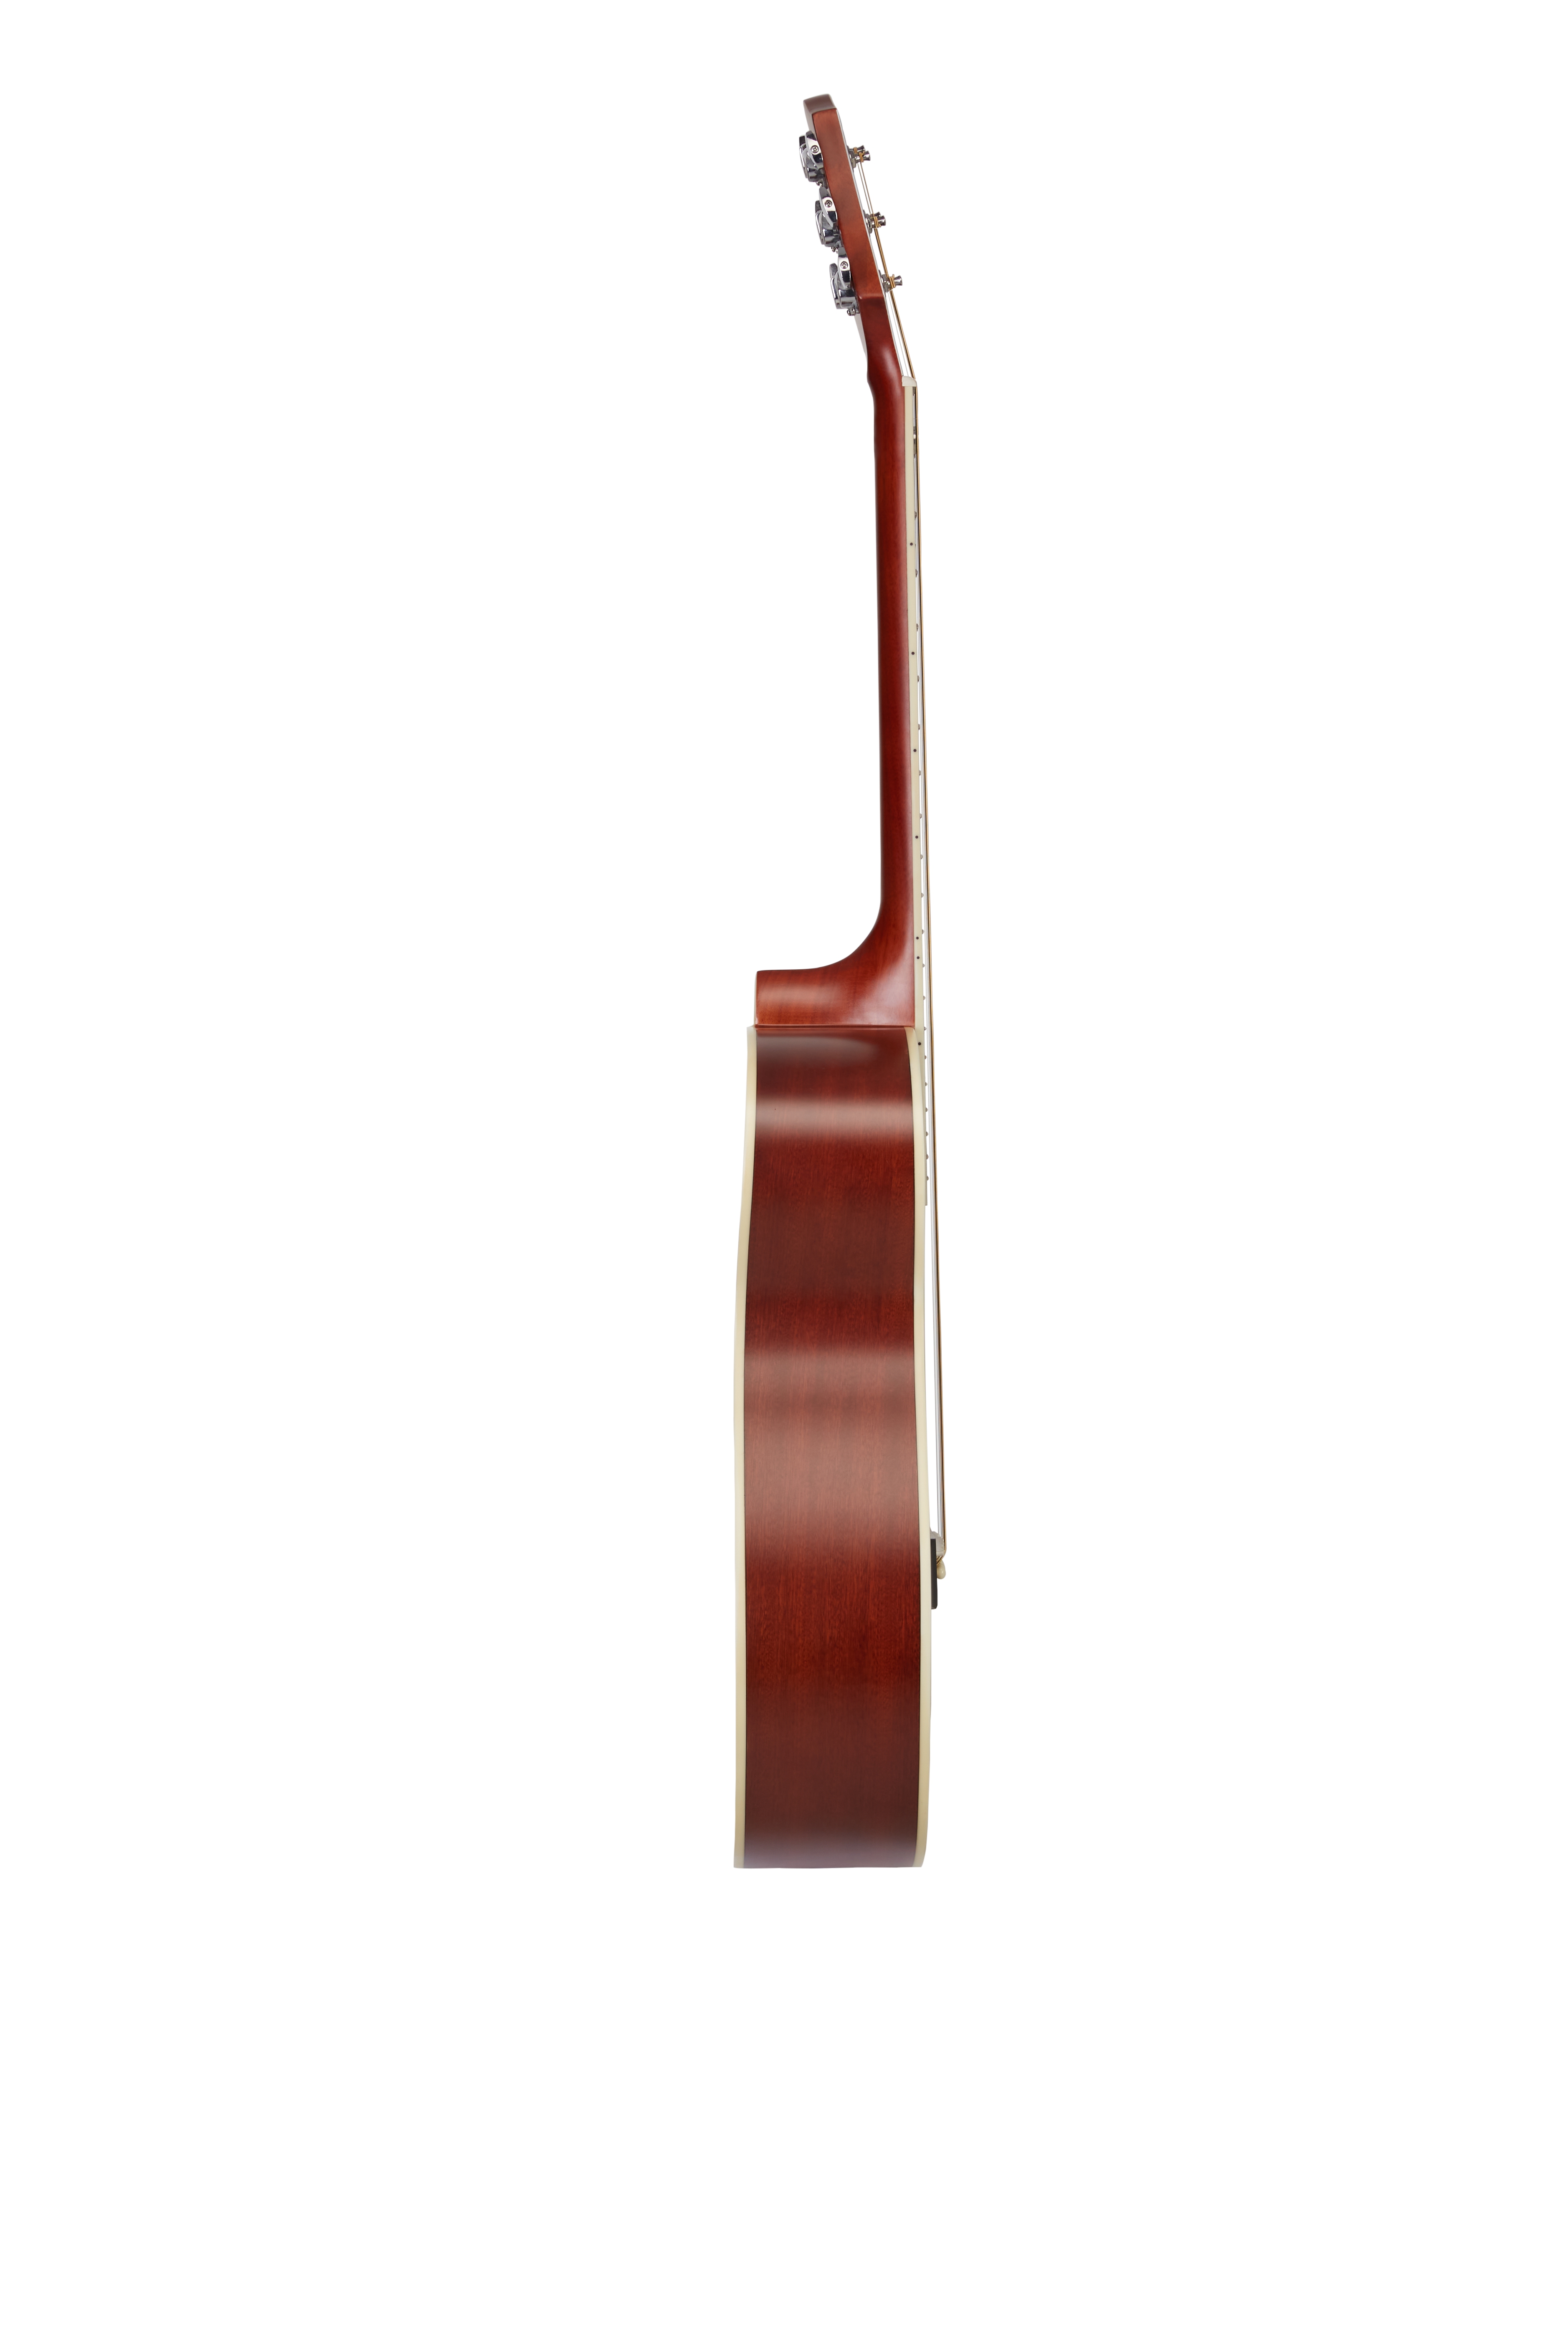 Đàn Guitar Acousitc Notherly Gale GT-400 (Màu Nâu Đỏ) - Tặng Kèm Bao Đàn Chính Hãng, Capo, Pick